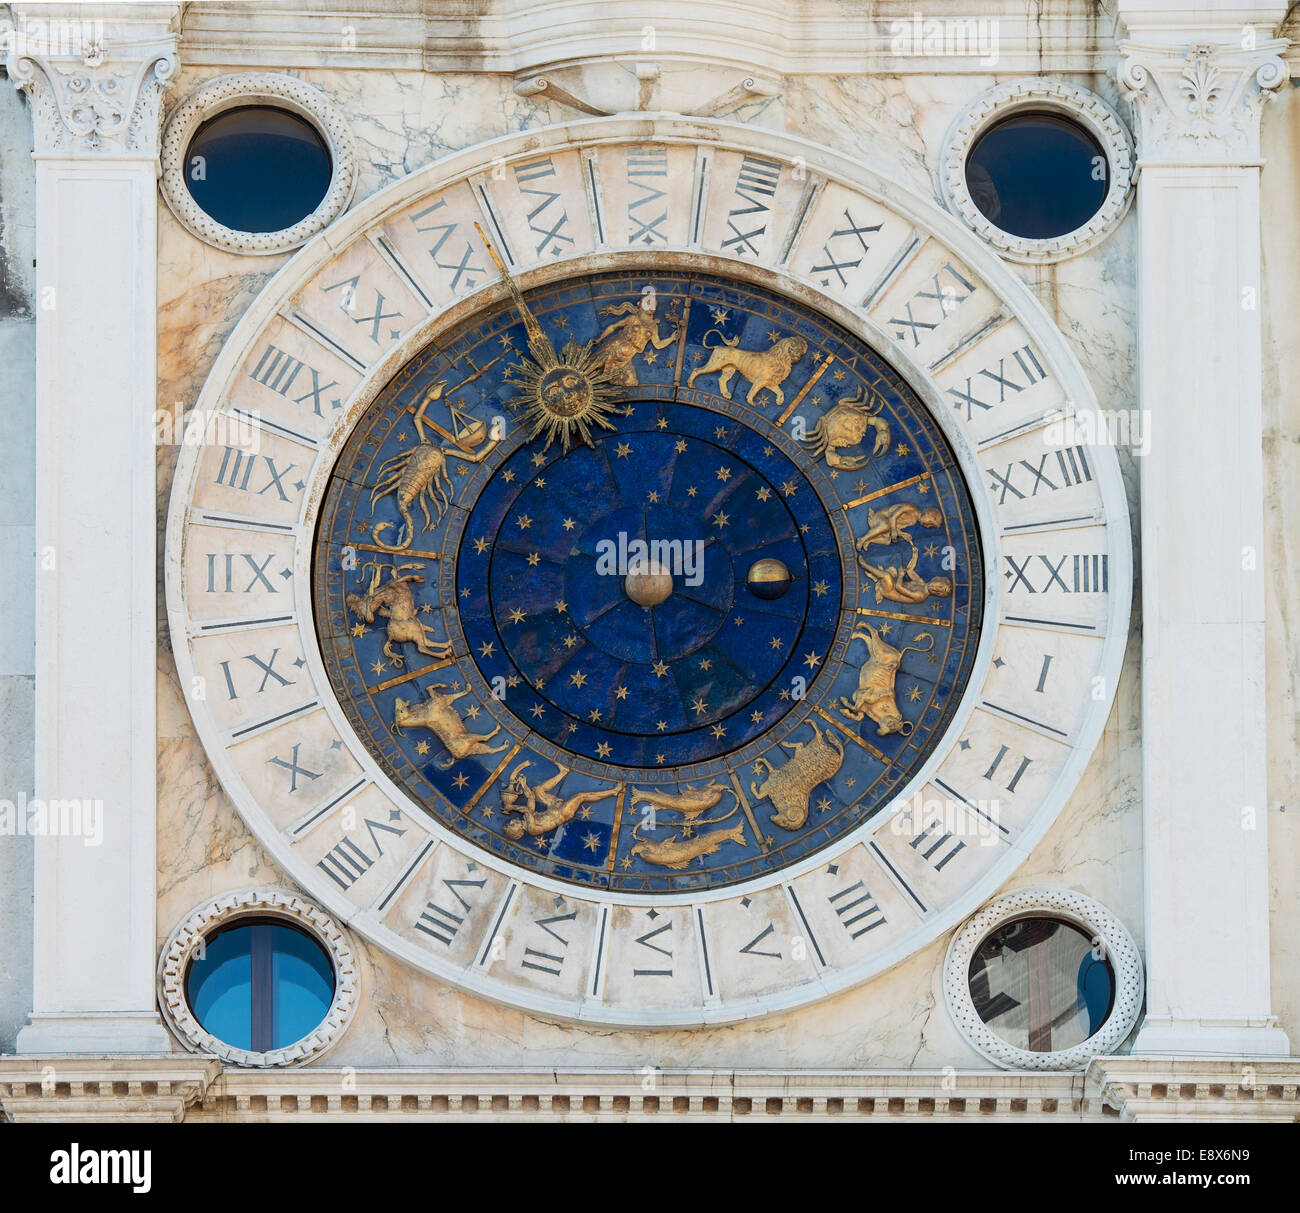 Tour de l'horloge astronomique (Torre dell'Orologio) à la place Saint-Marc (Piazza San Marco), Venise, Italie Banque D'Images